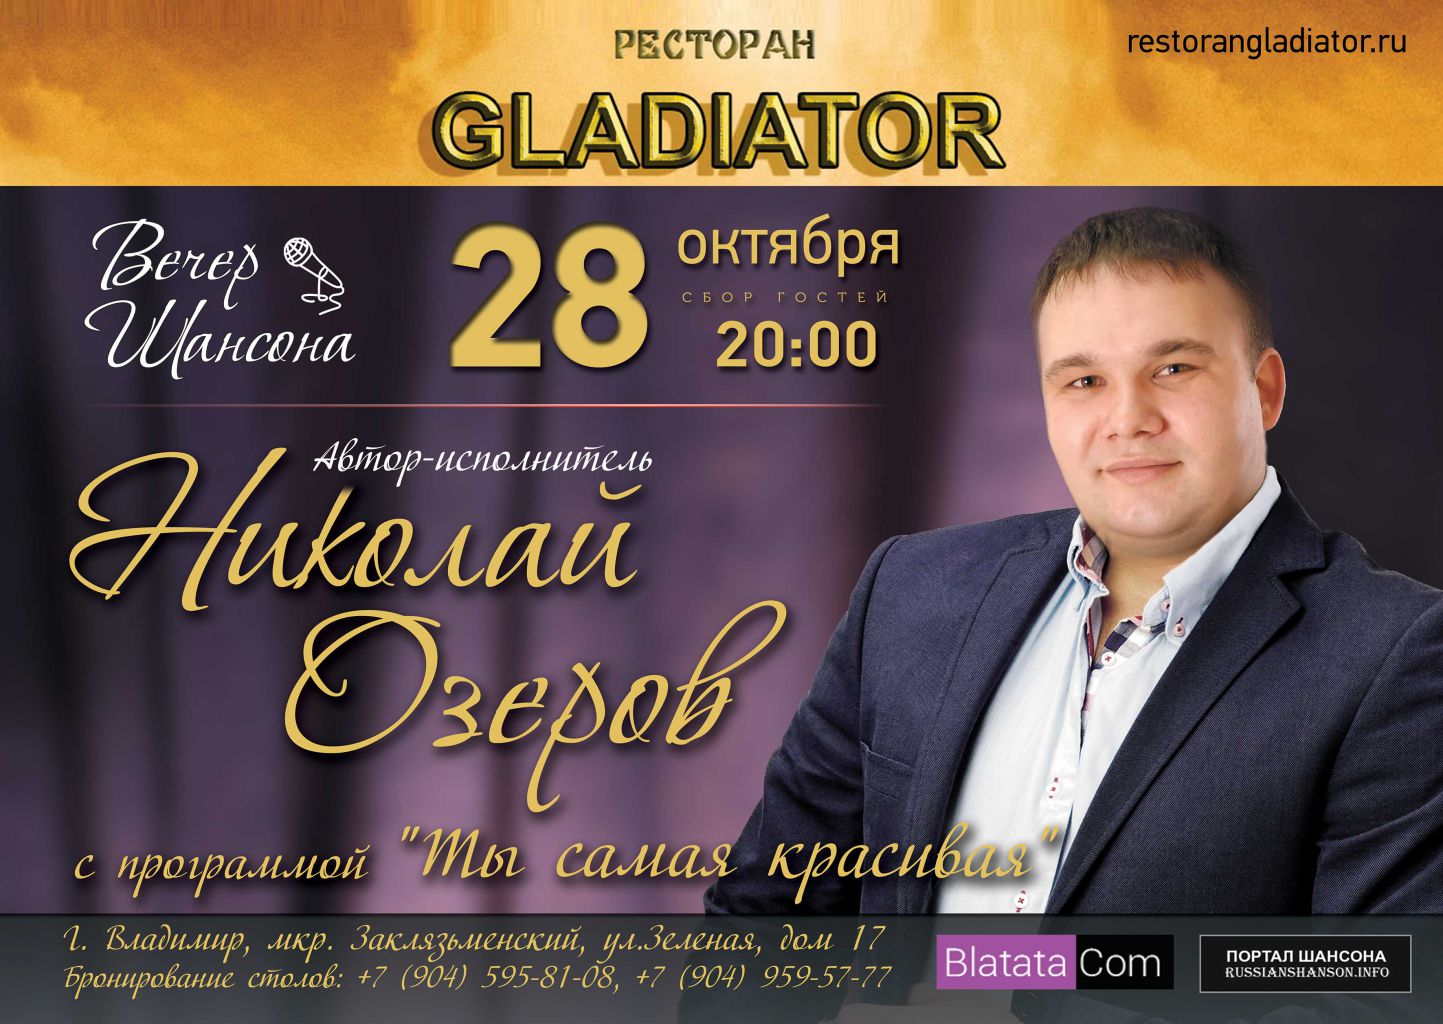 Николай Озеров с программой «Ты самая красивая» г.Владимир 28 октября 2016 года